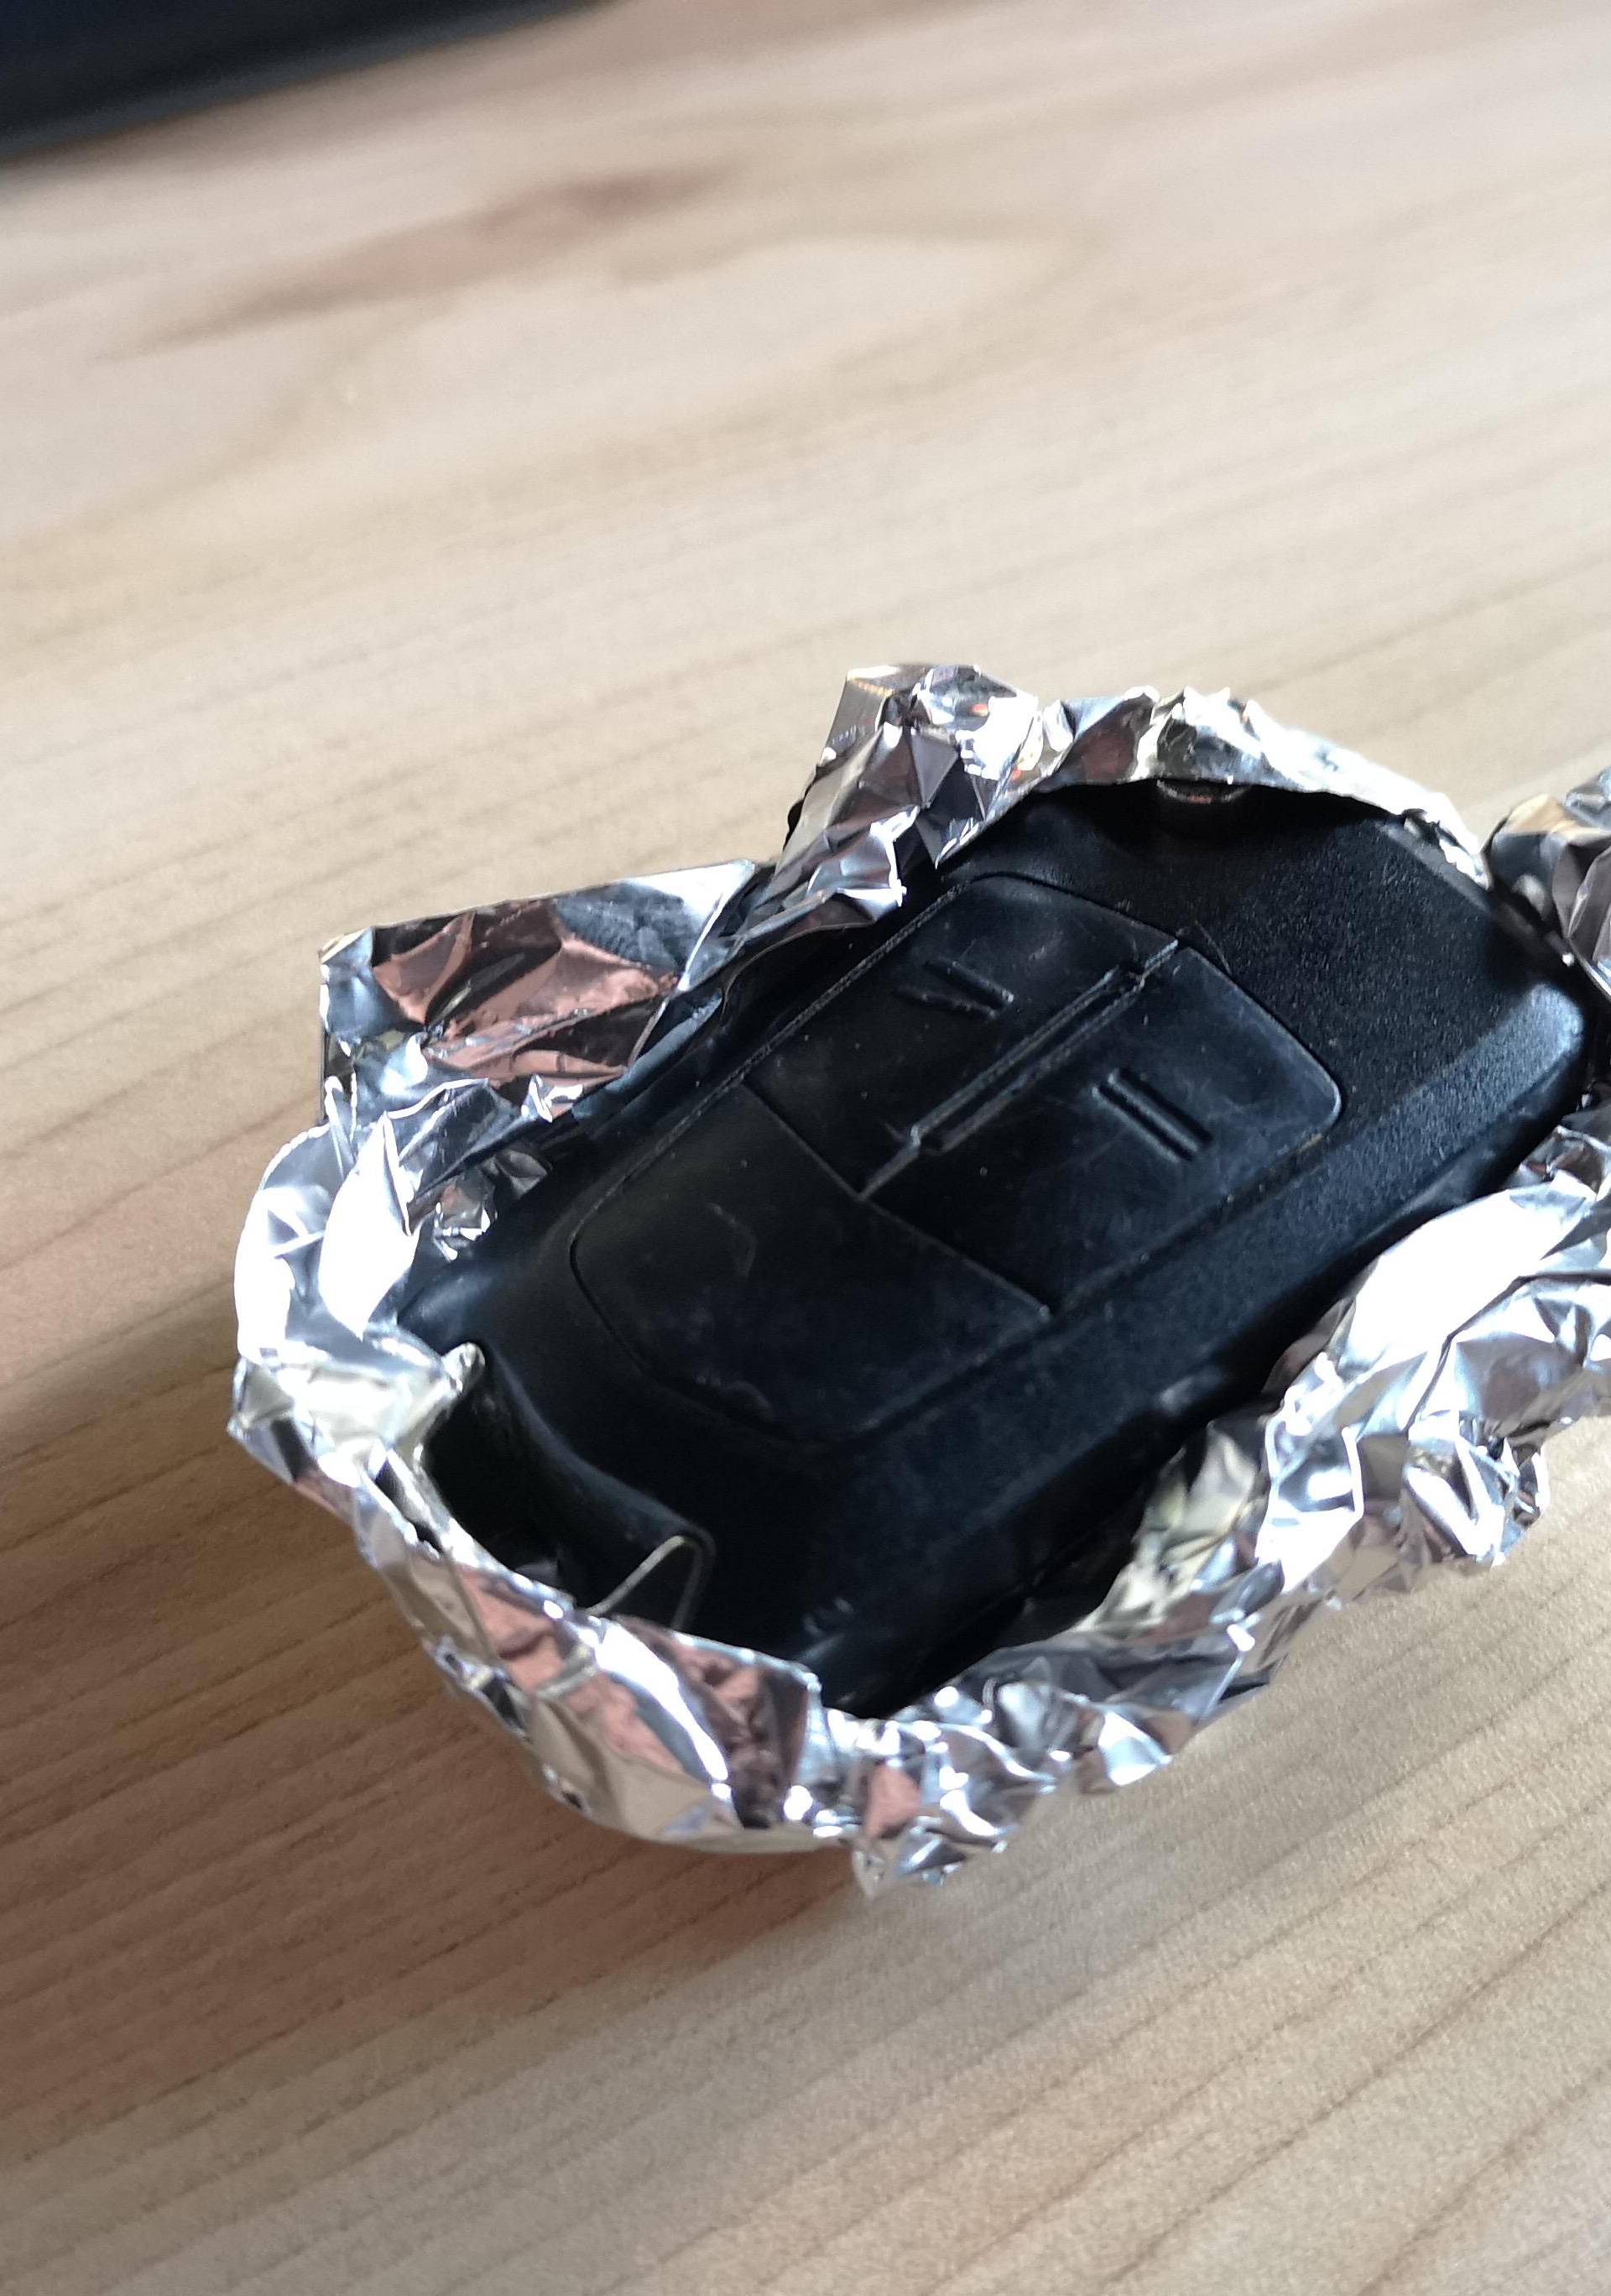 Ključ u aluminijskoj foliji bi mogao zaštititi auto od krađe